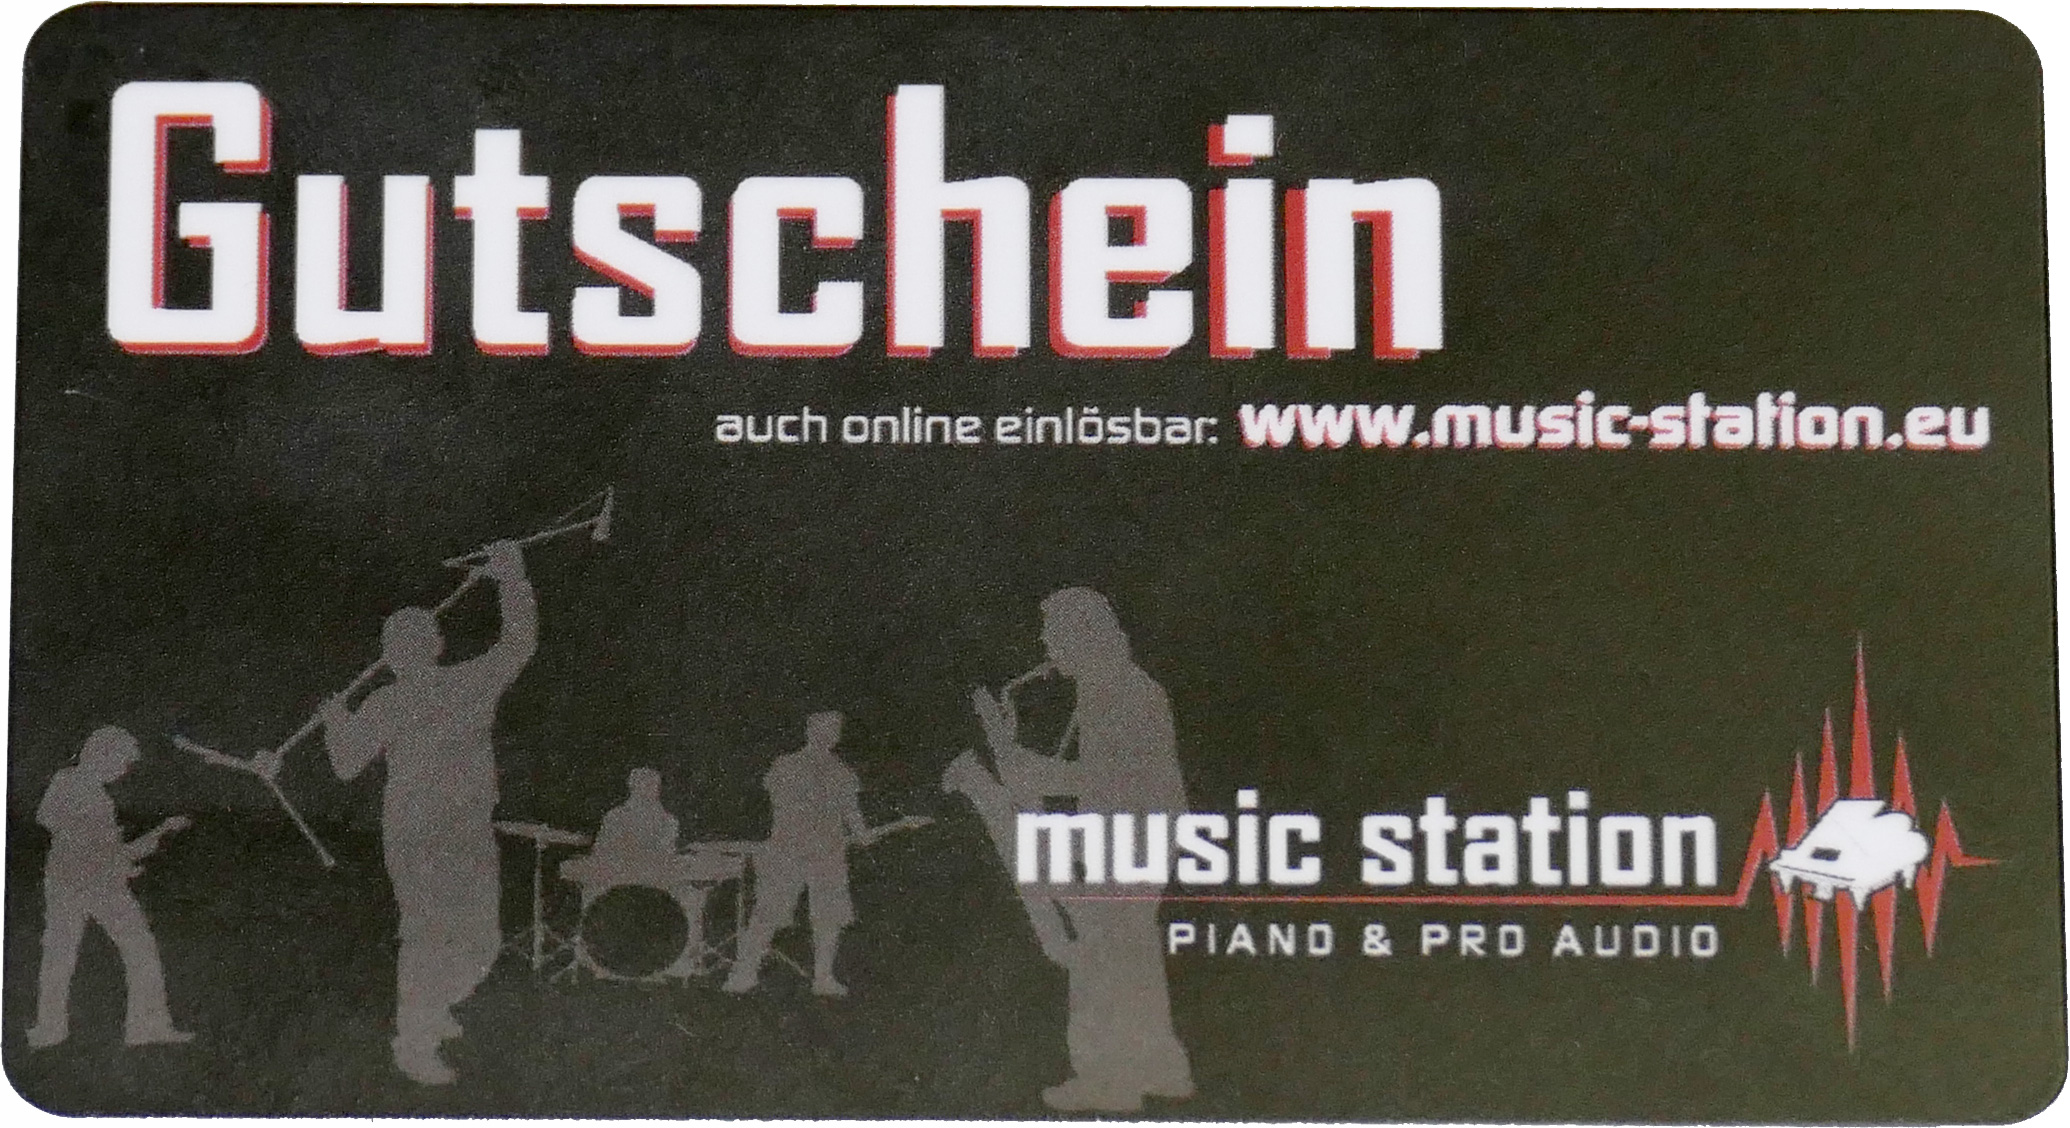 Music Station Gutschein 500 Euro